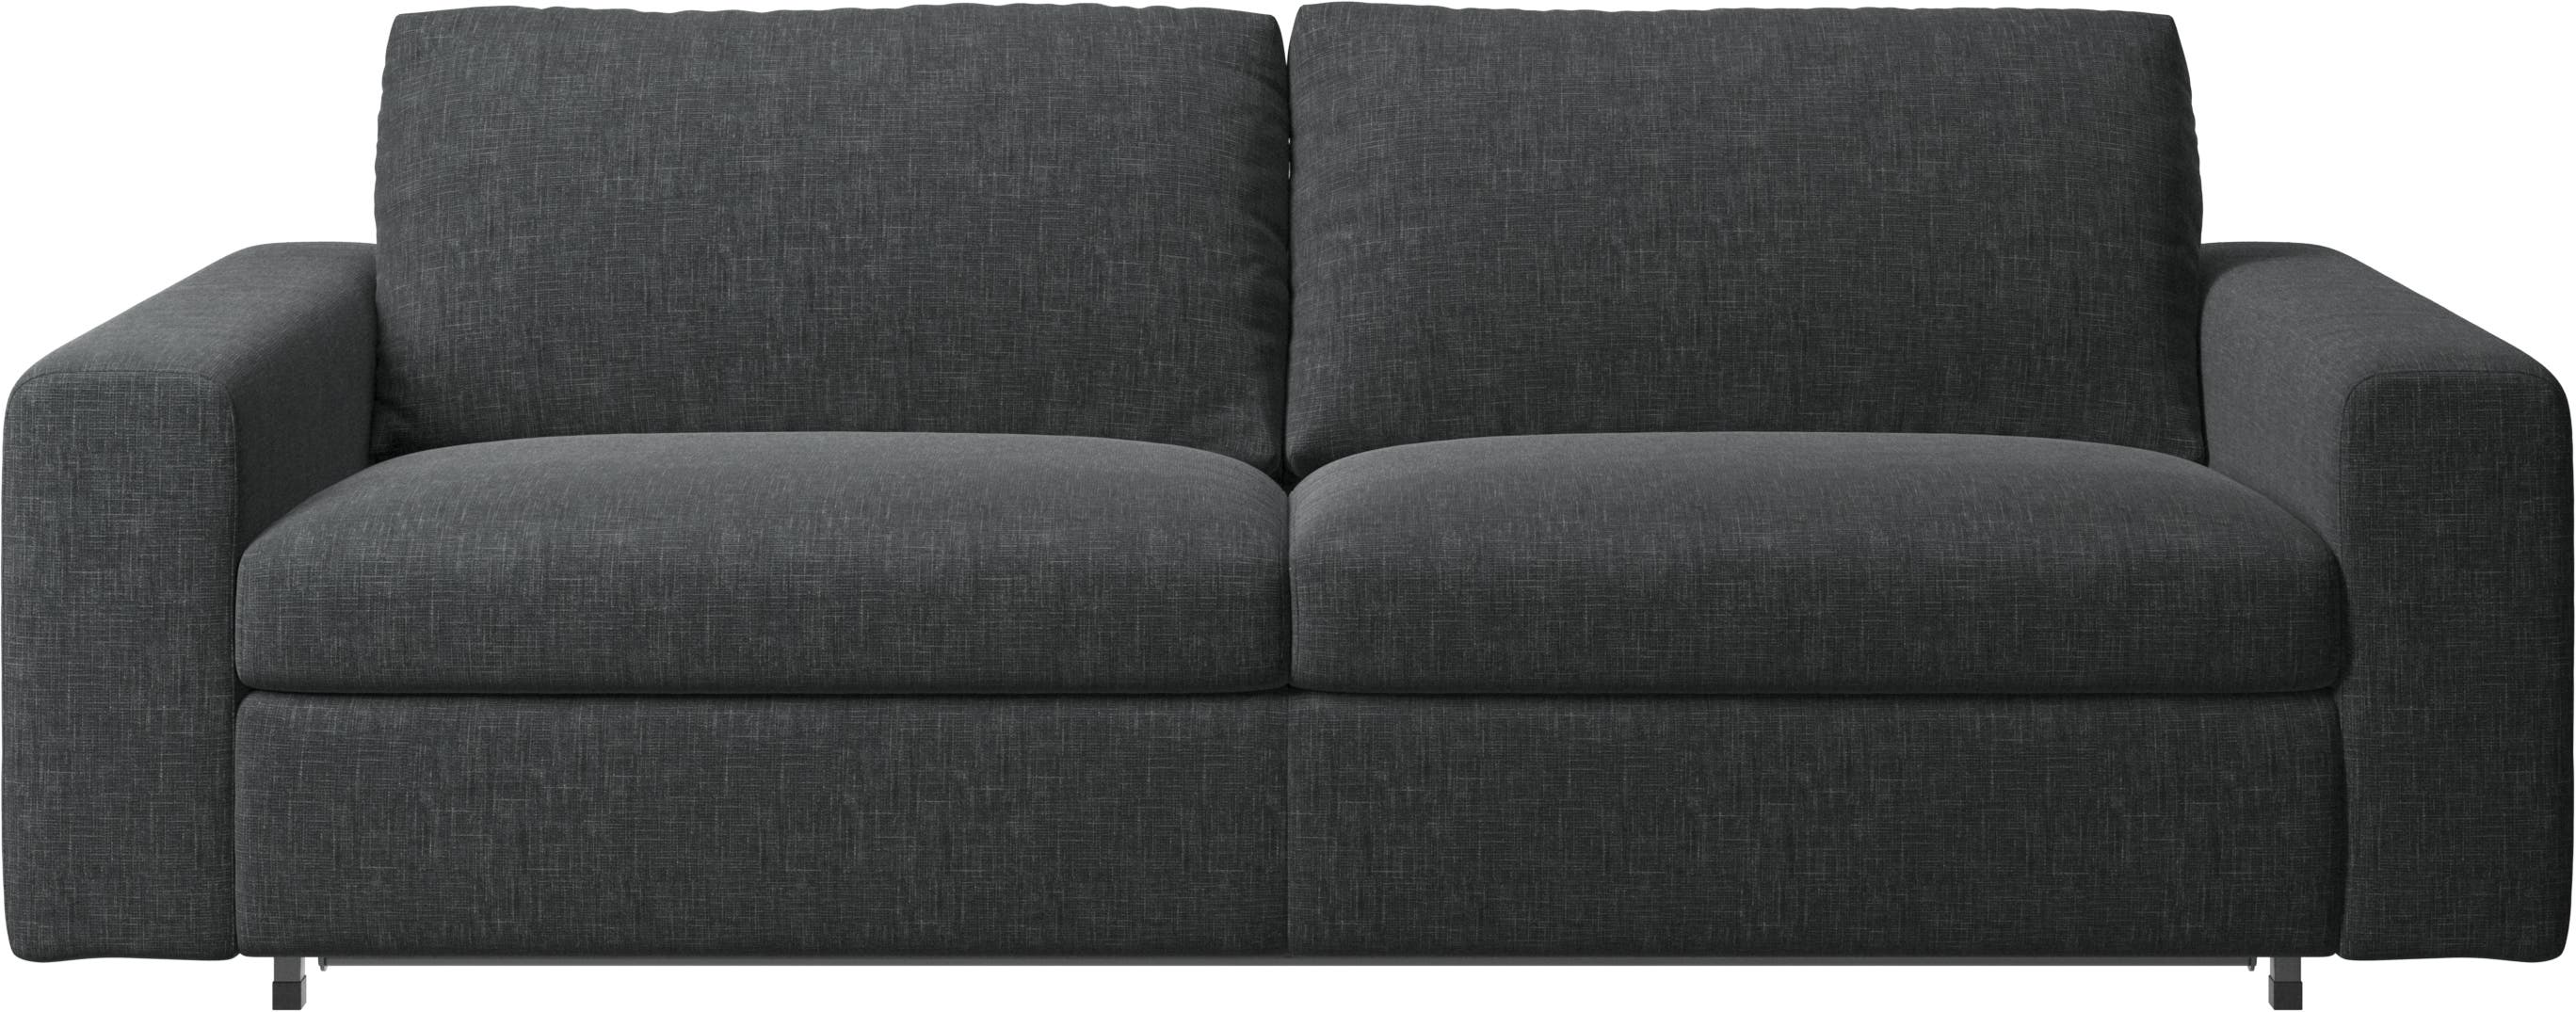 Taylor ágyazható kanapé